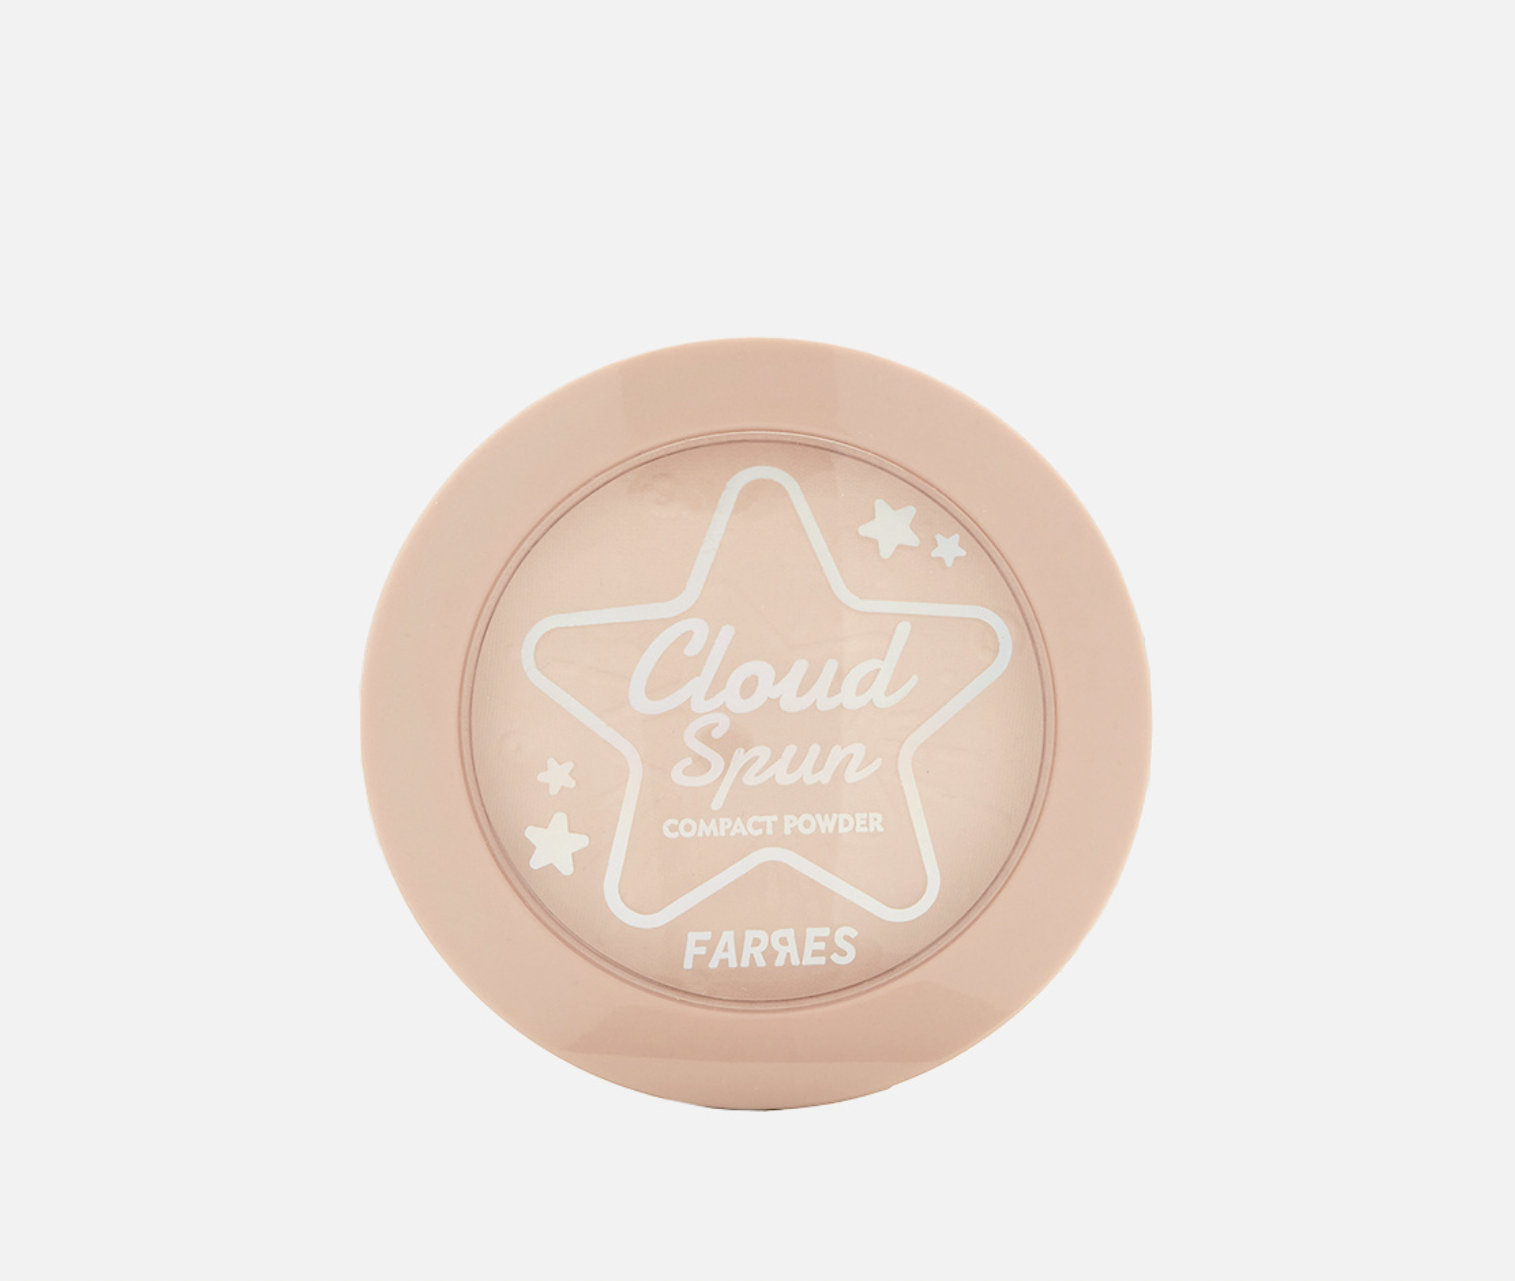   / Farres -     Cloud Spun 3026-04, 8,6 